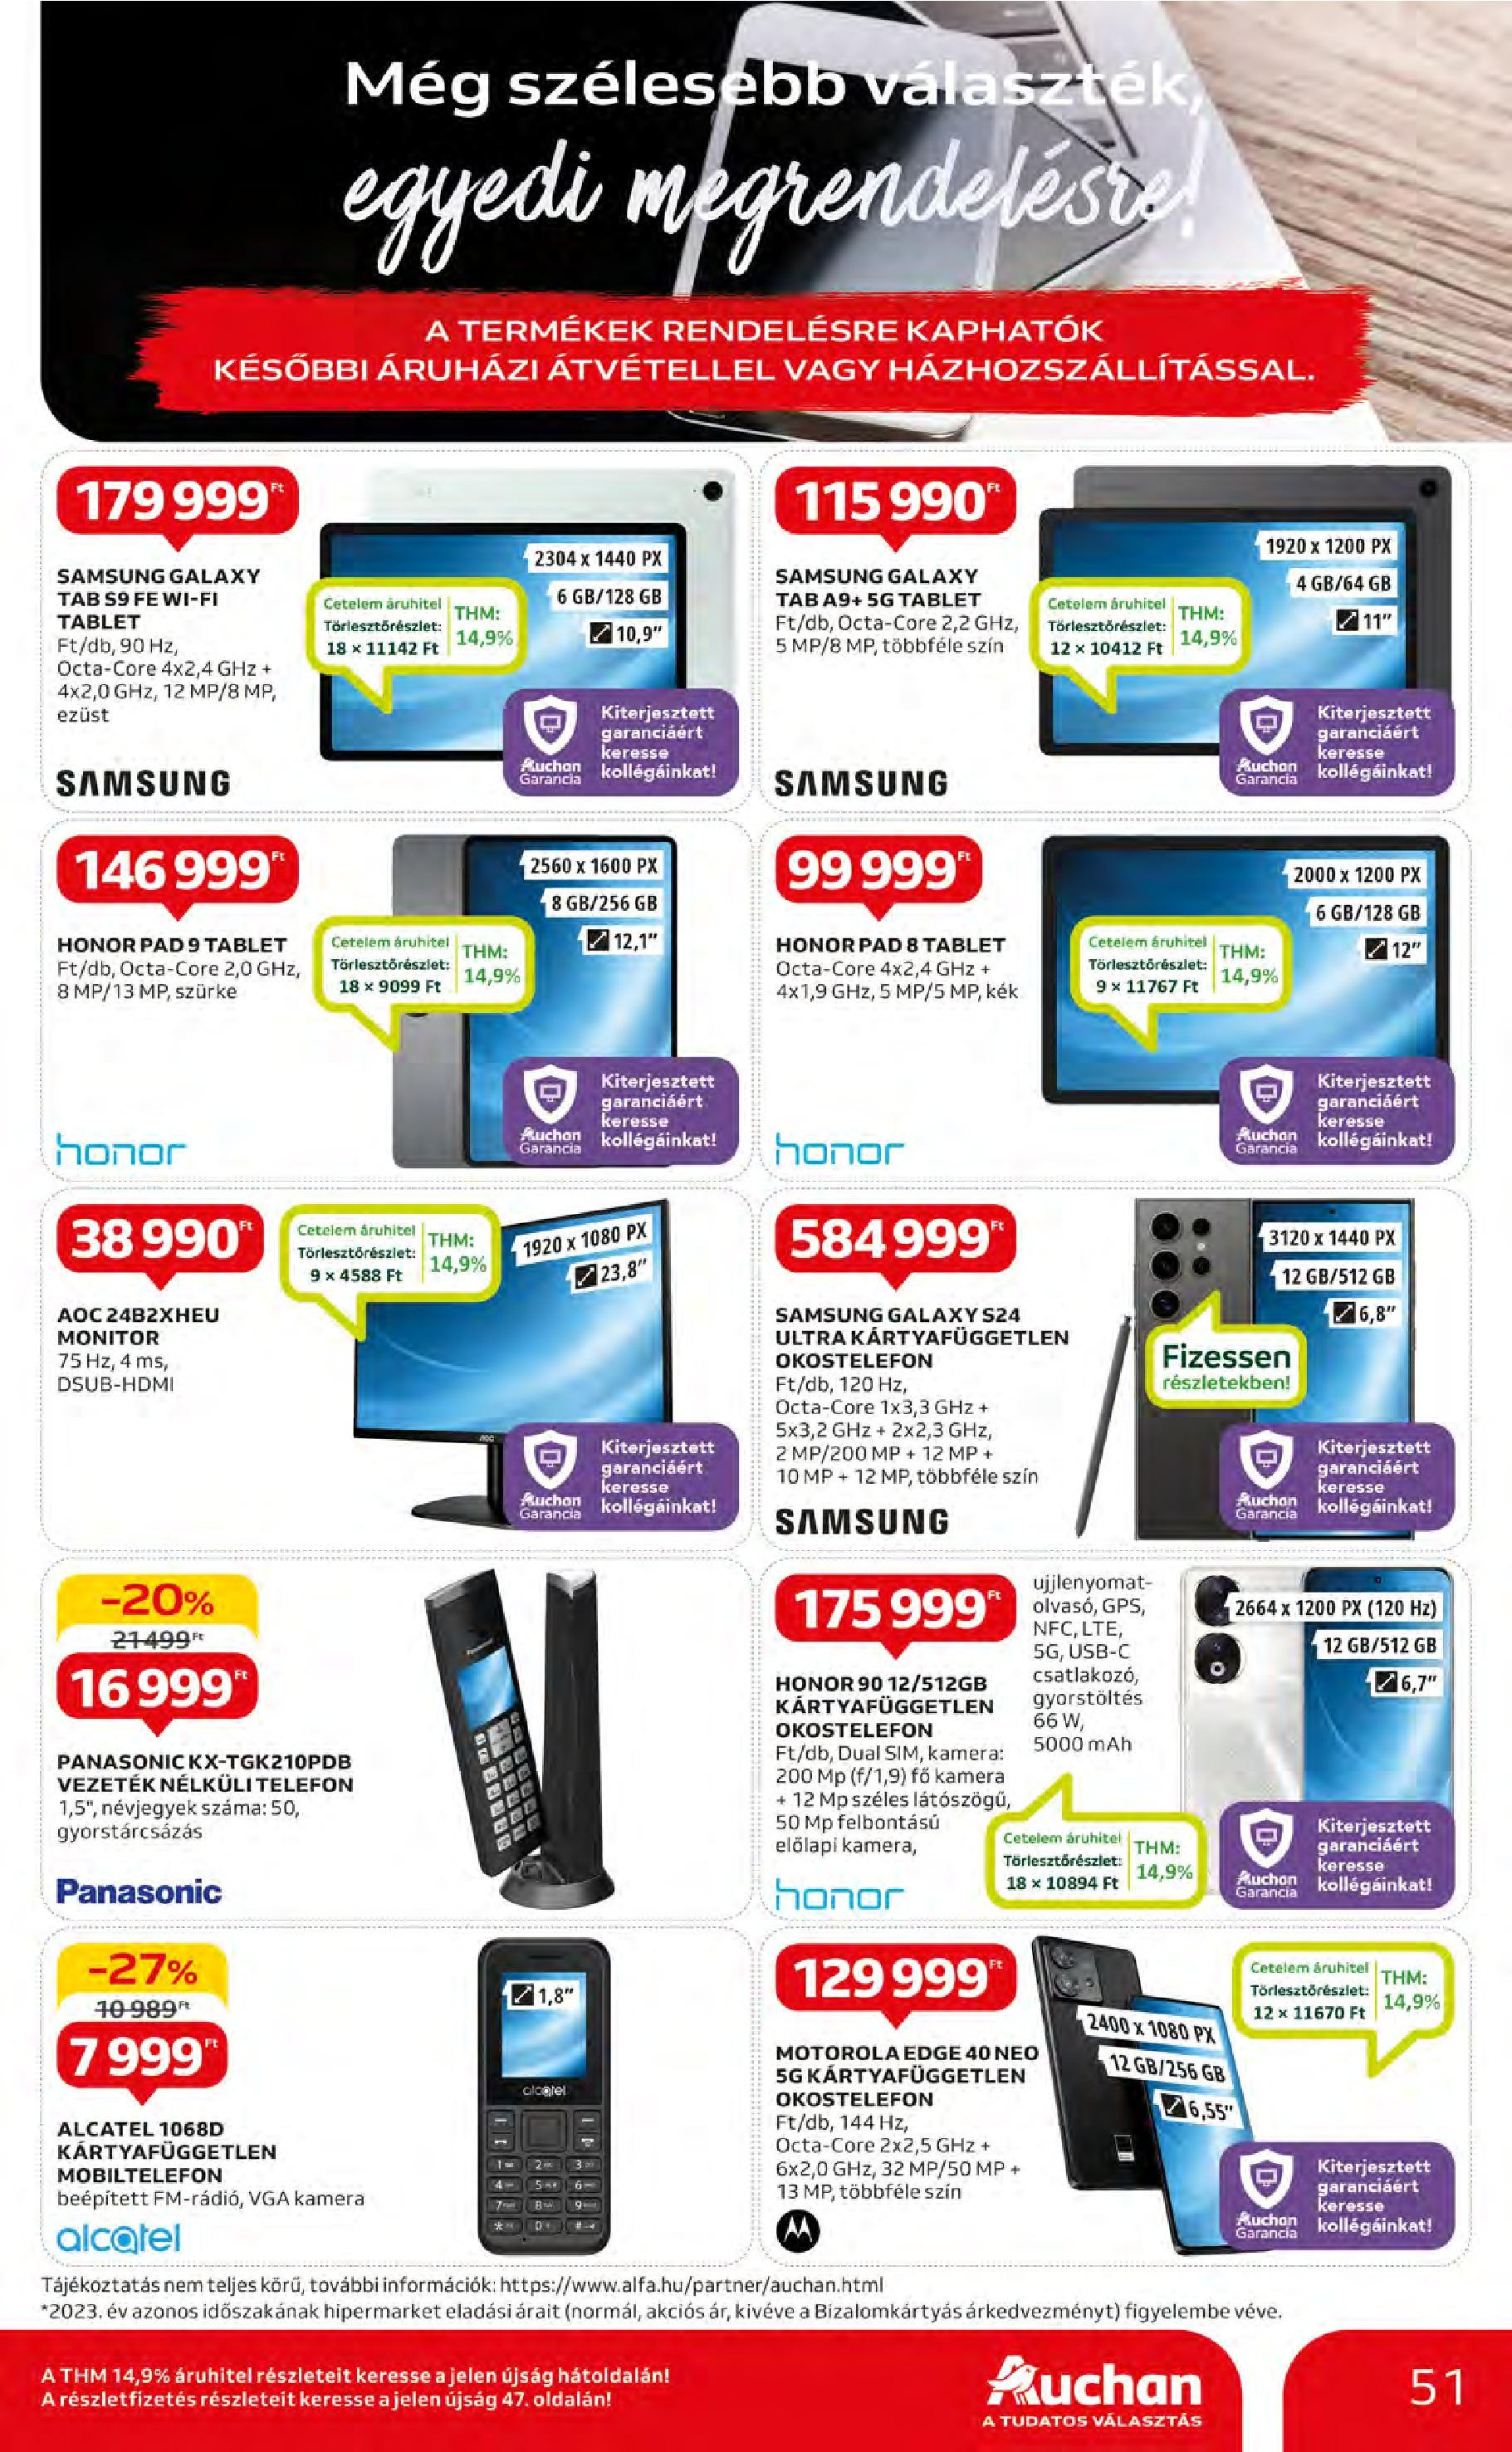 Auchan  Akciós újság - 2024.05.09. -tól/töl > akció, szórólap 🛍️ | Oldal: 51 | Termékek: Tablet, Kamera, Csatlakozó, Vezeték nélküli telefon